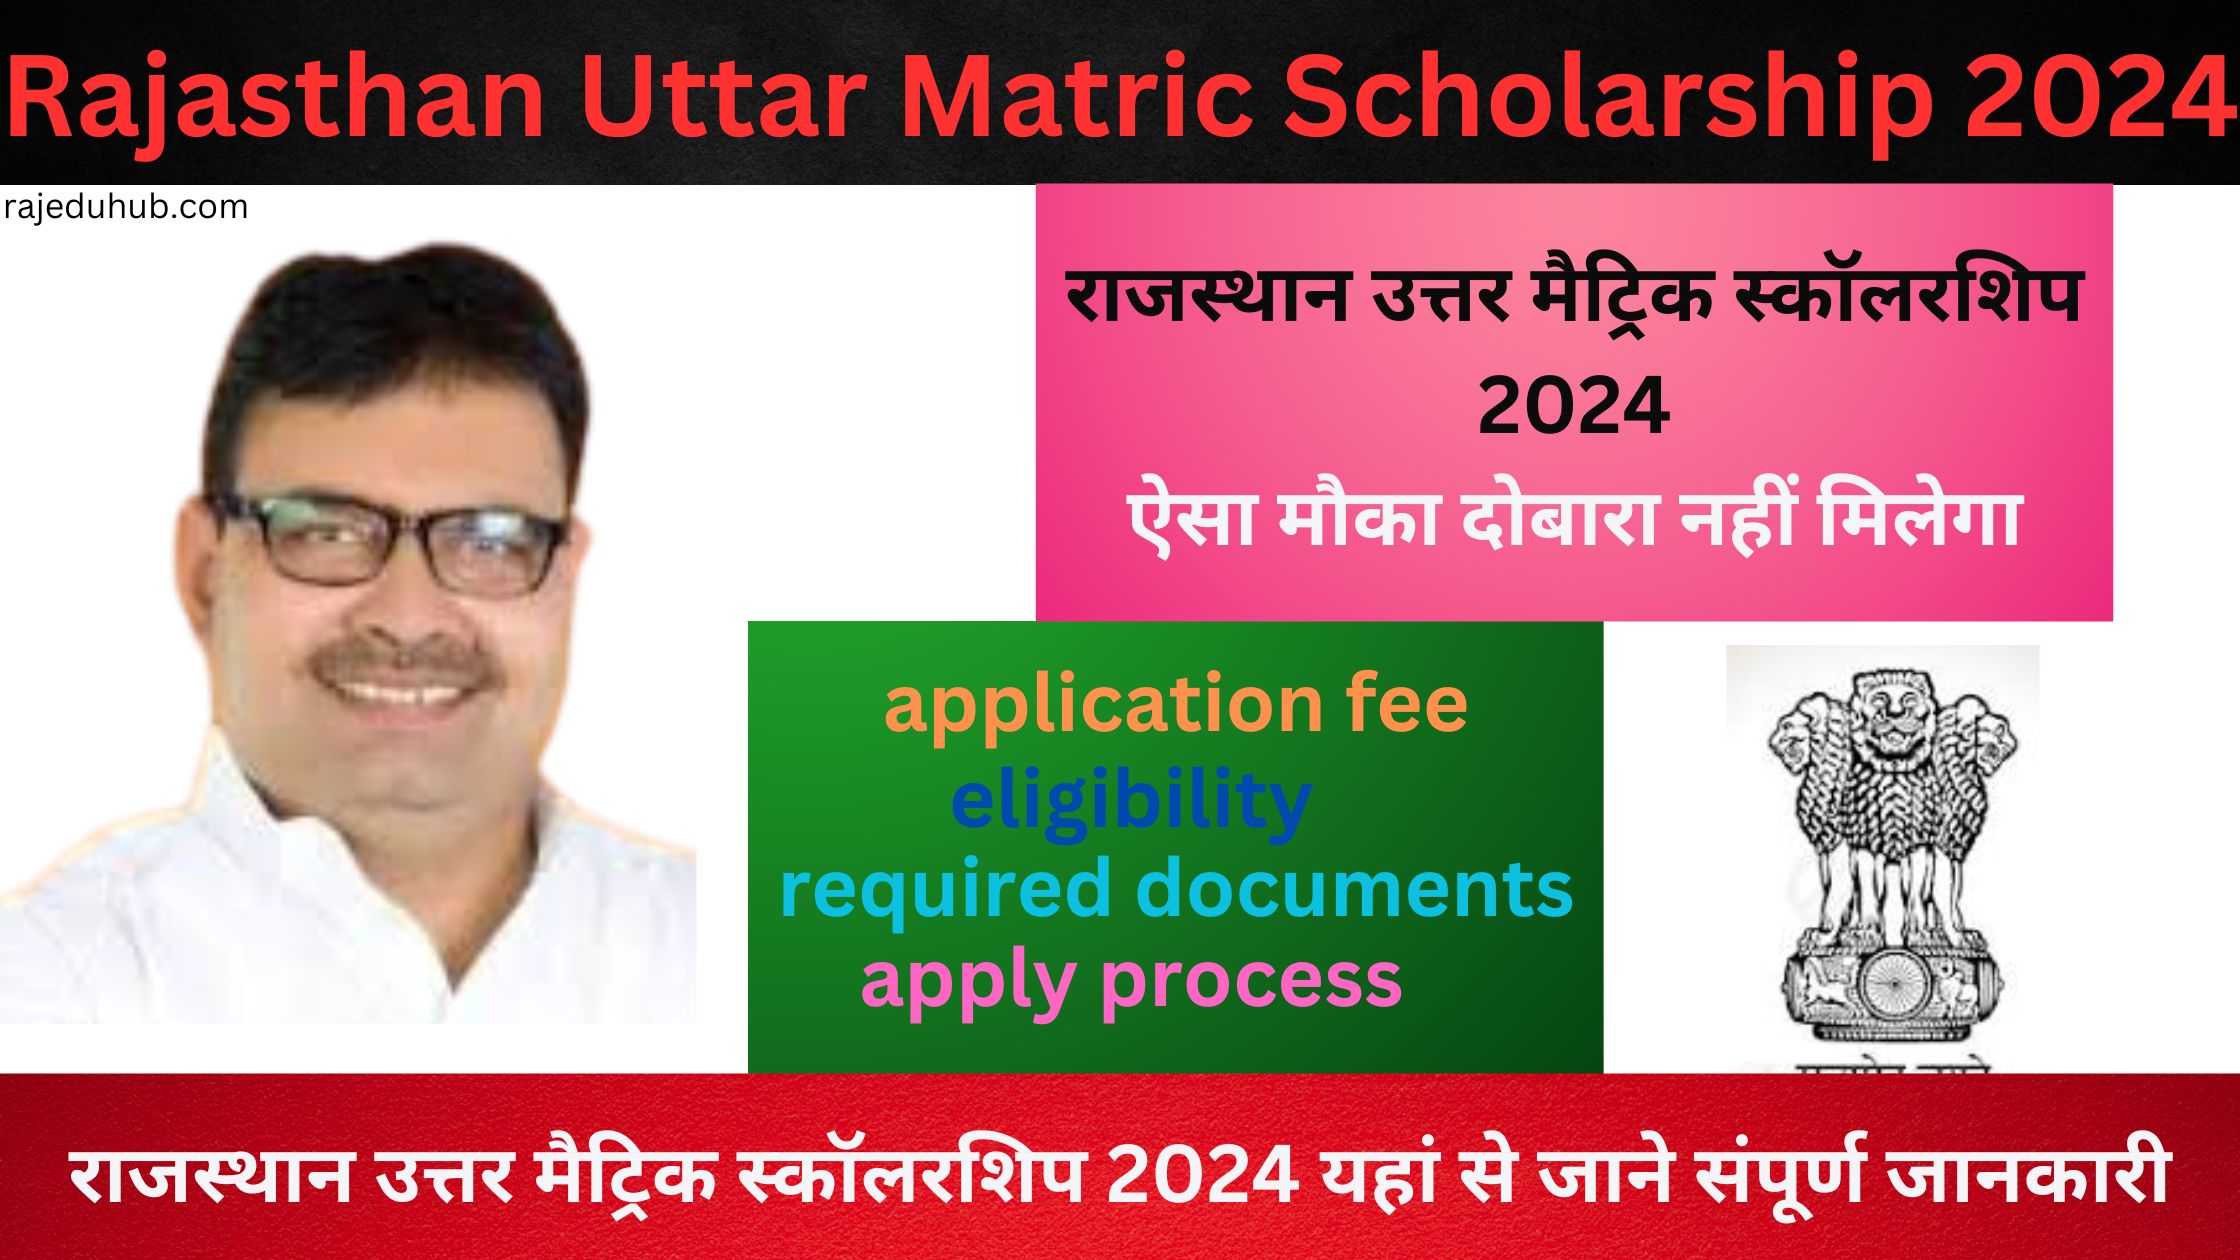 Rajasthan Uttar Matric Scholarship 2024 | राजस्थान उत्तर मैट्रिक स्कॉलरशिप 2024 यहां से जाने संपूर्ण जानकारी